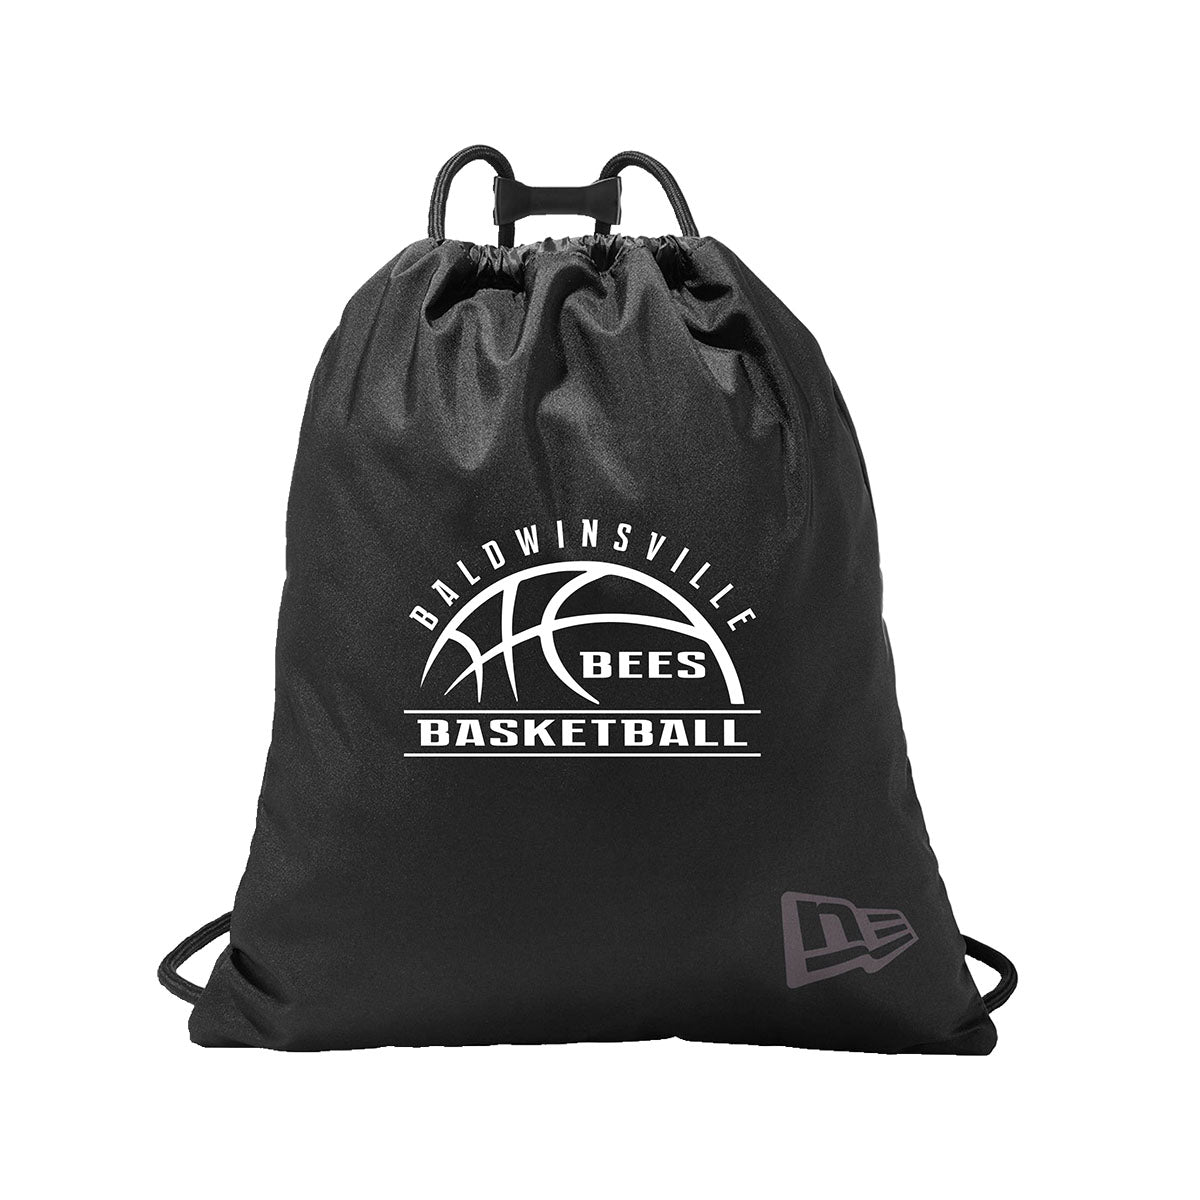 "Baldwinsville Bees Basketball" Cinch Bags